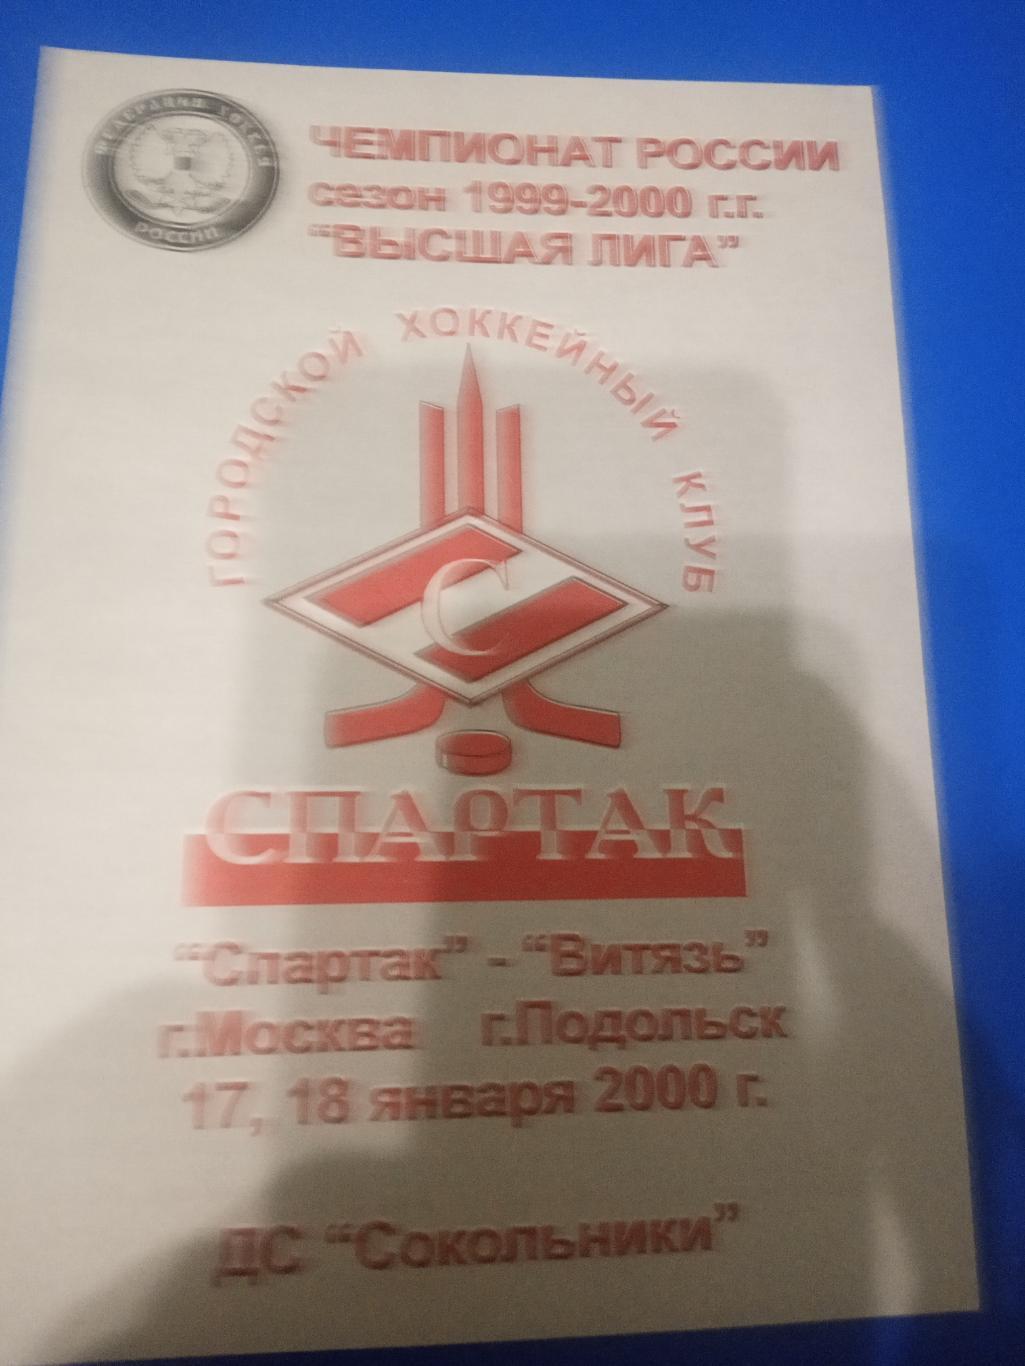 Спартак Москва - Витязь Подольск 17-18 января 2000